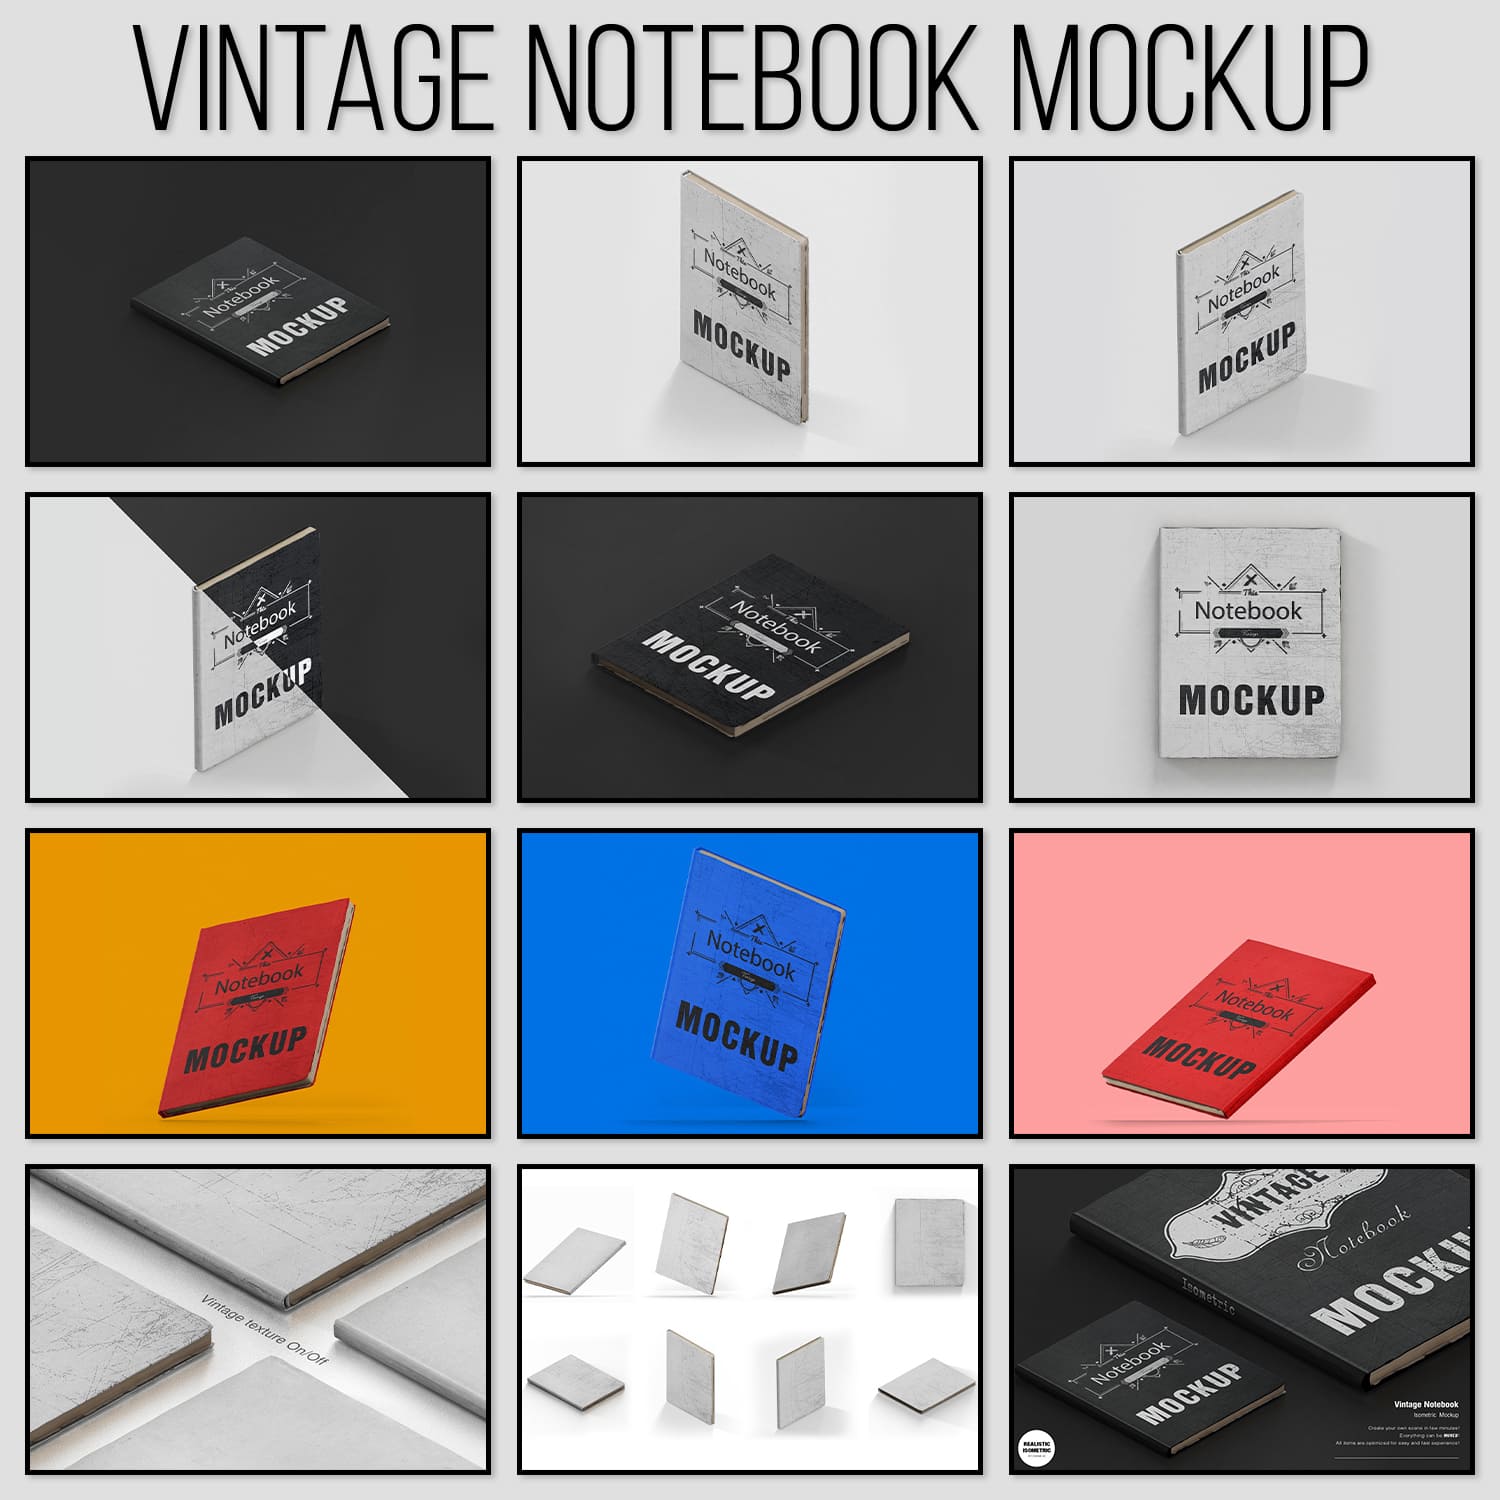 Vintage Notebook Mockup.